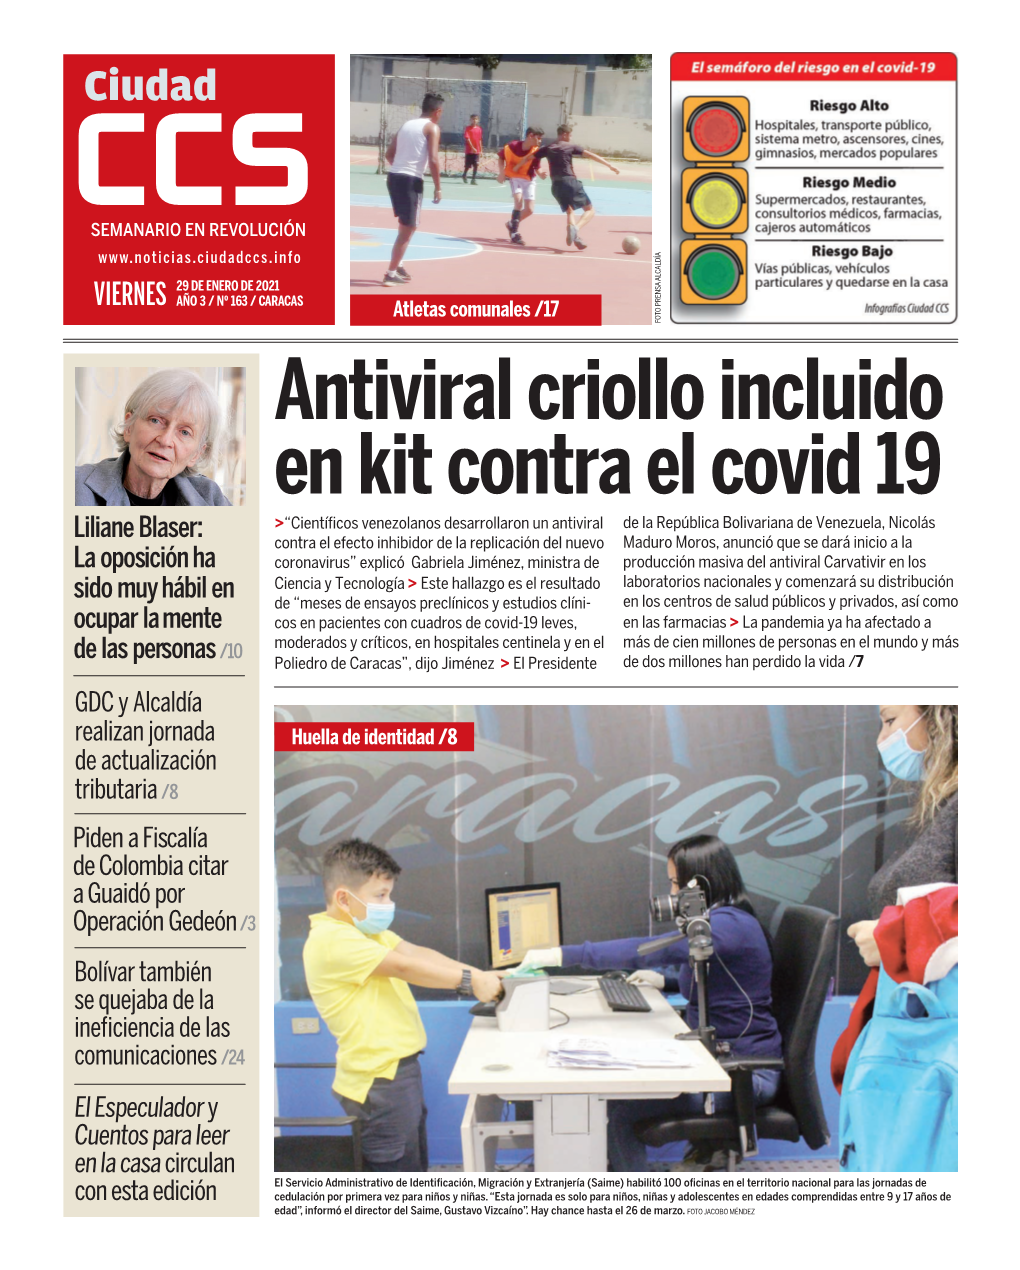 Antiviral Criollo Incluido En Kit Contra El Covid 19